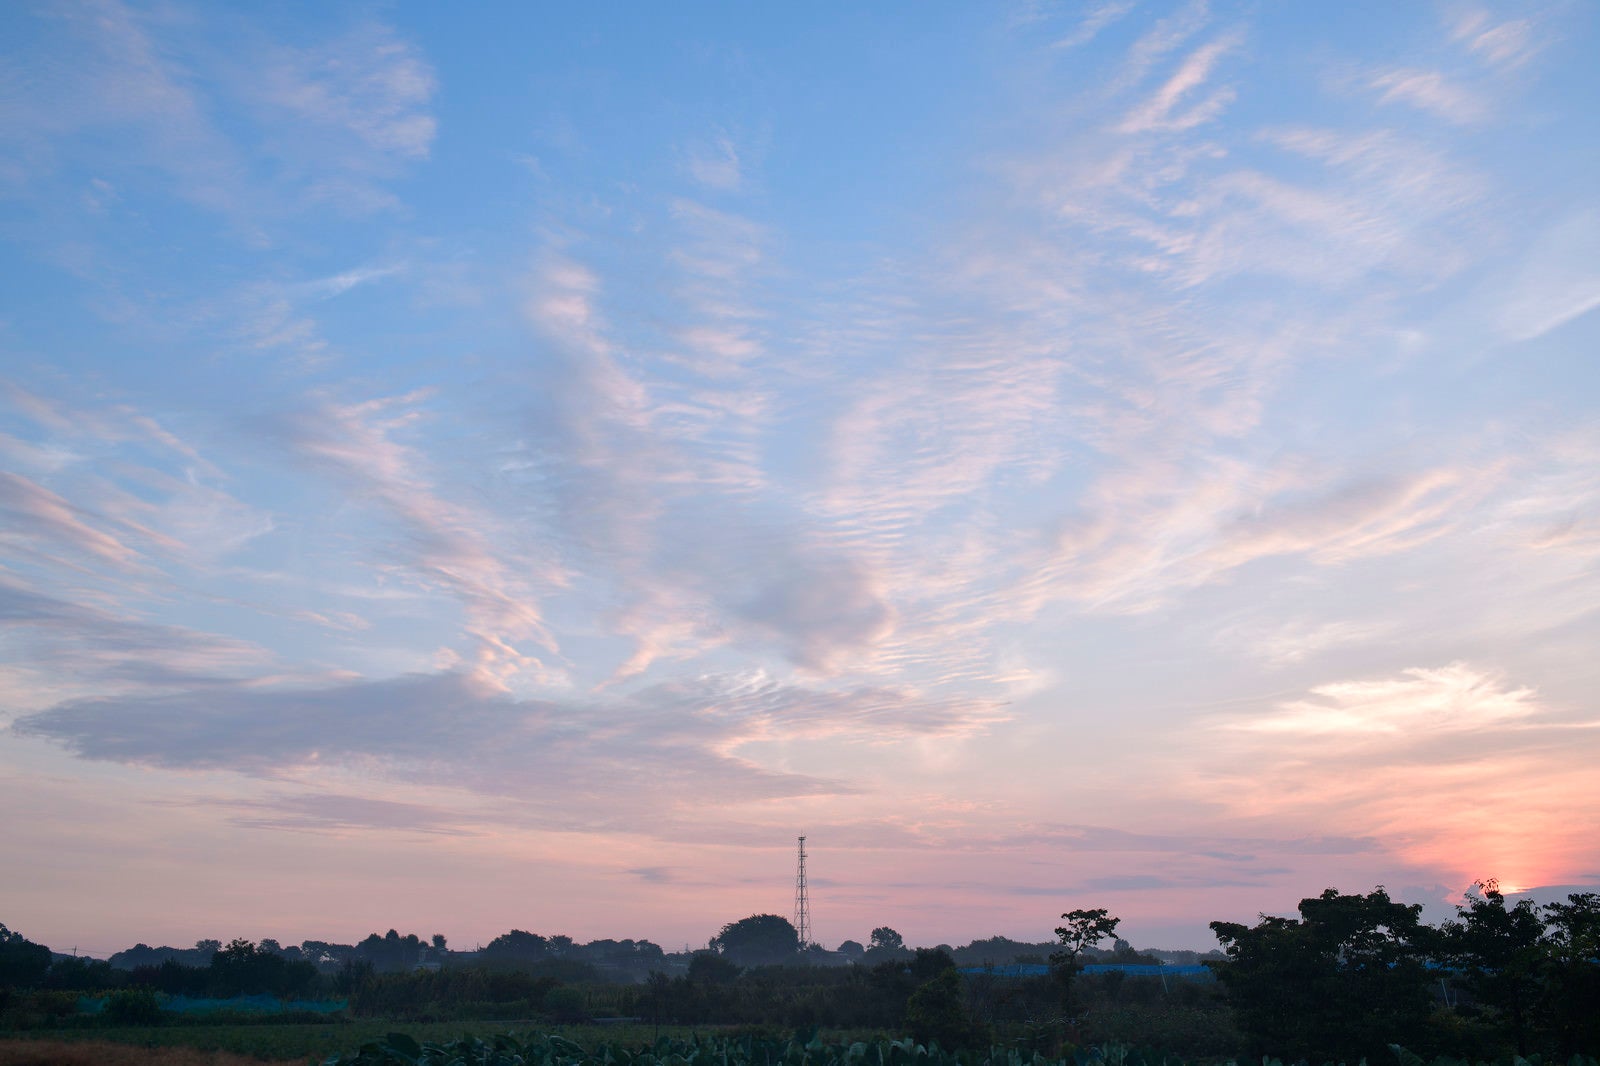 「パステルカラーでさわやかな雰囲気の朝の空」の写真